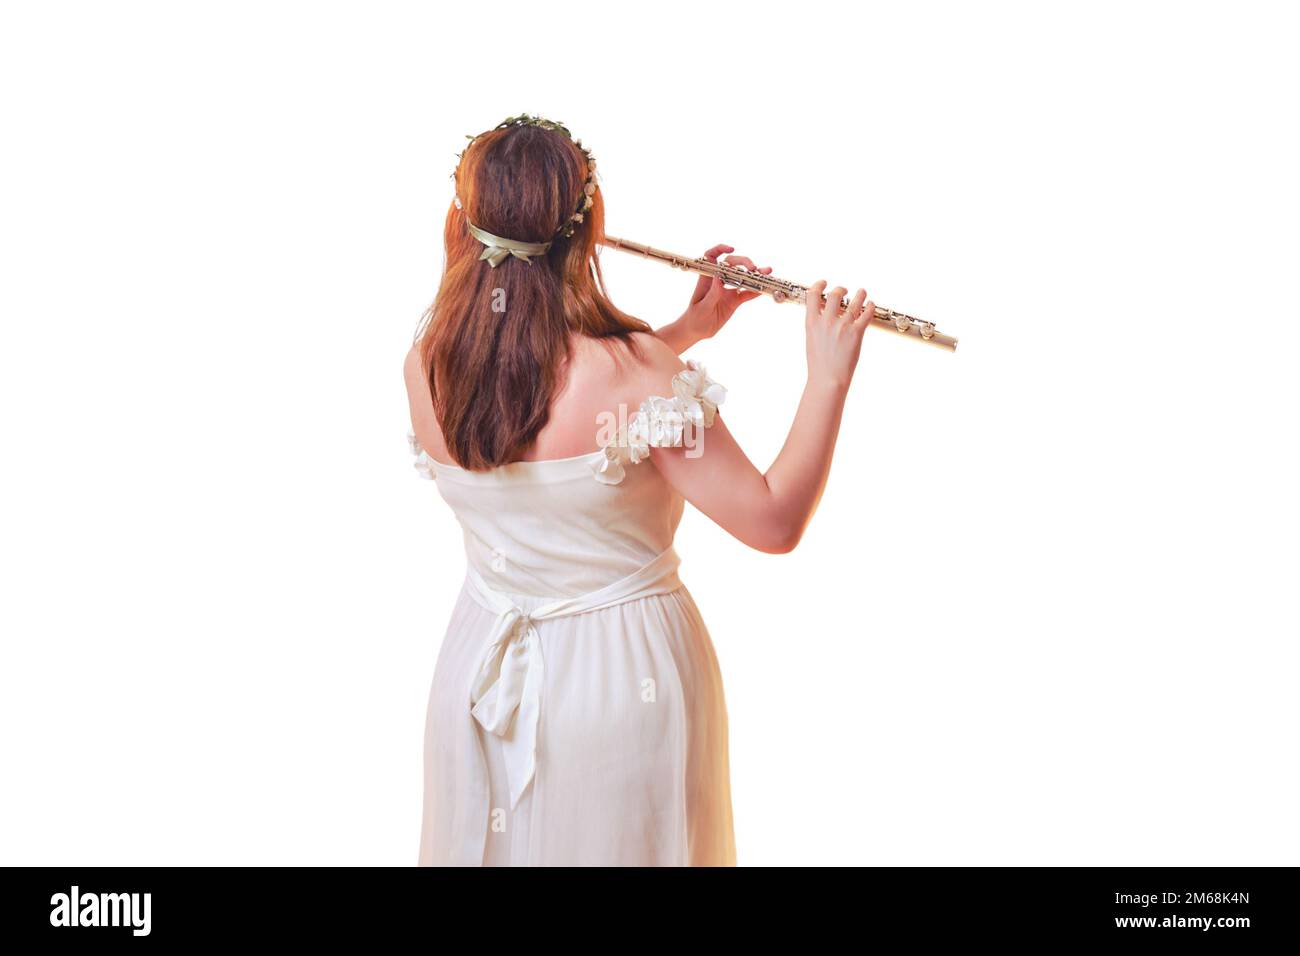 La musicista femminile suona il flauto vicino alla stella luminosa, vista dal retro, isolato su uno sfondo bianco Foto Stock